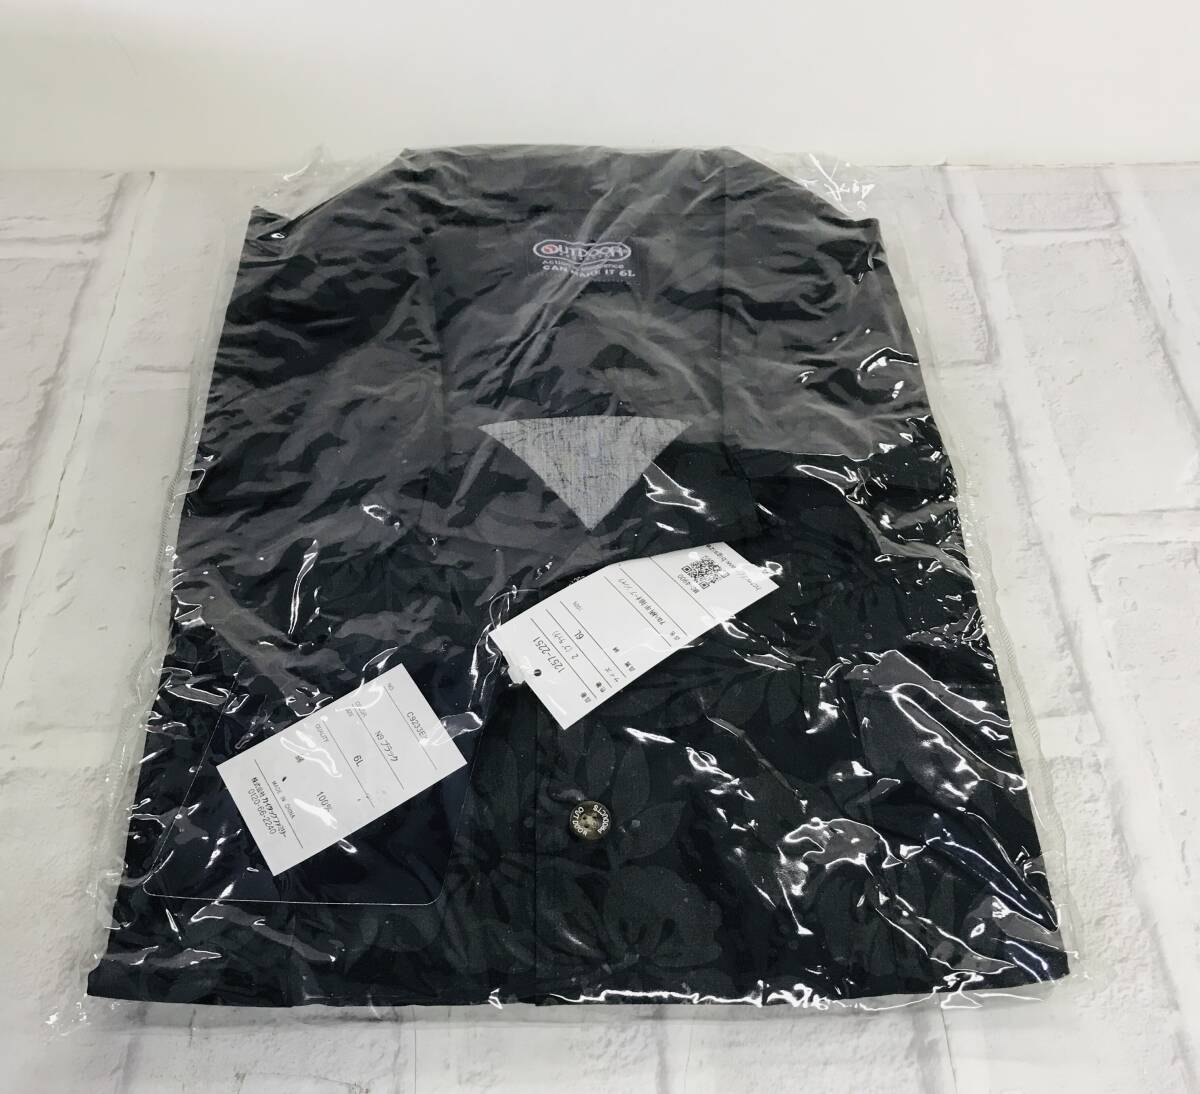 ☆【服】OUTDOOR アロハ柄 半袖 オープンシャツ 6L ブラック タグ付き☆N03-248Sの画像1